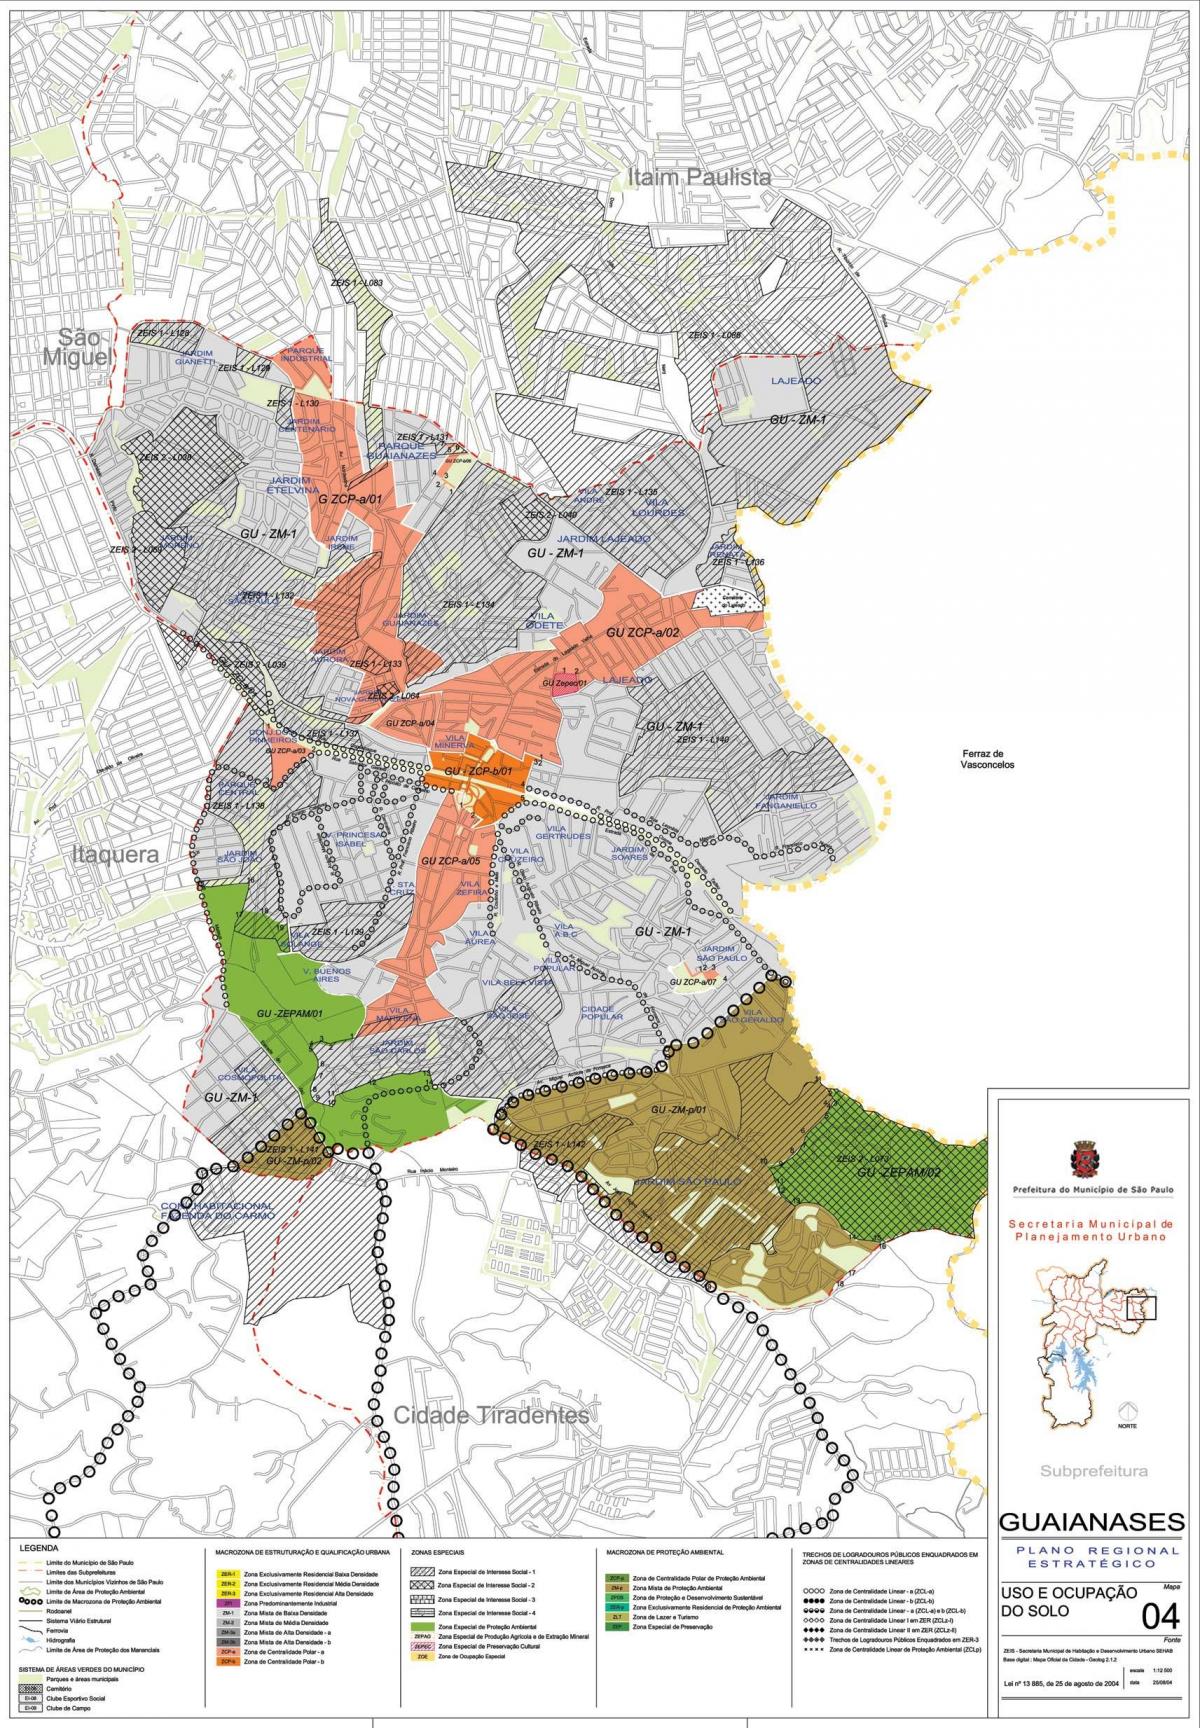 Toprağın Guaianases São Paulo haritası - İşgal